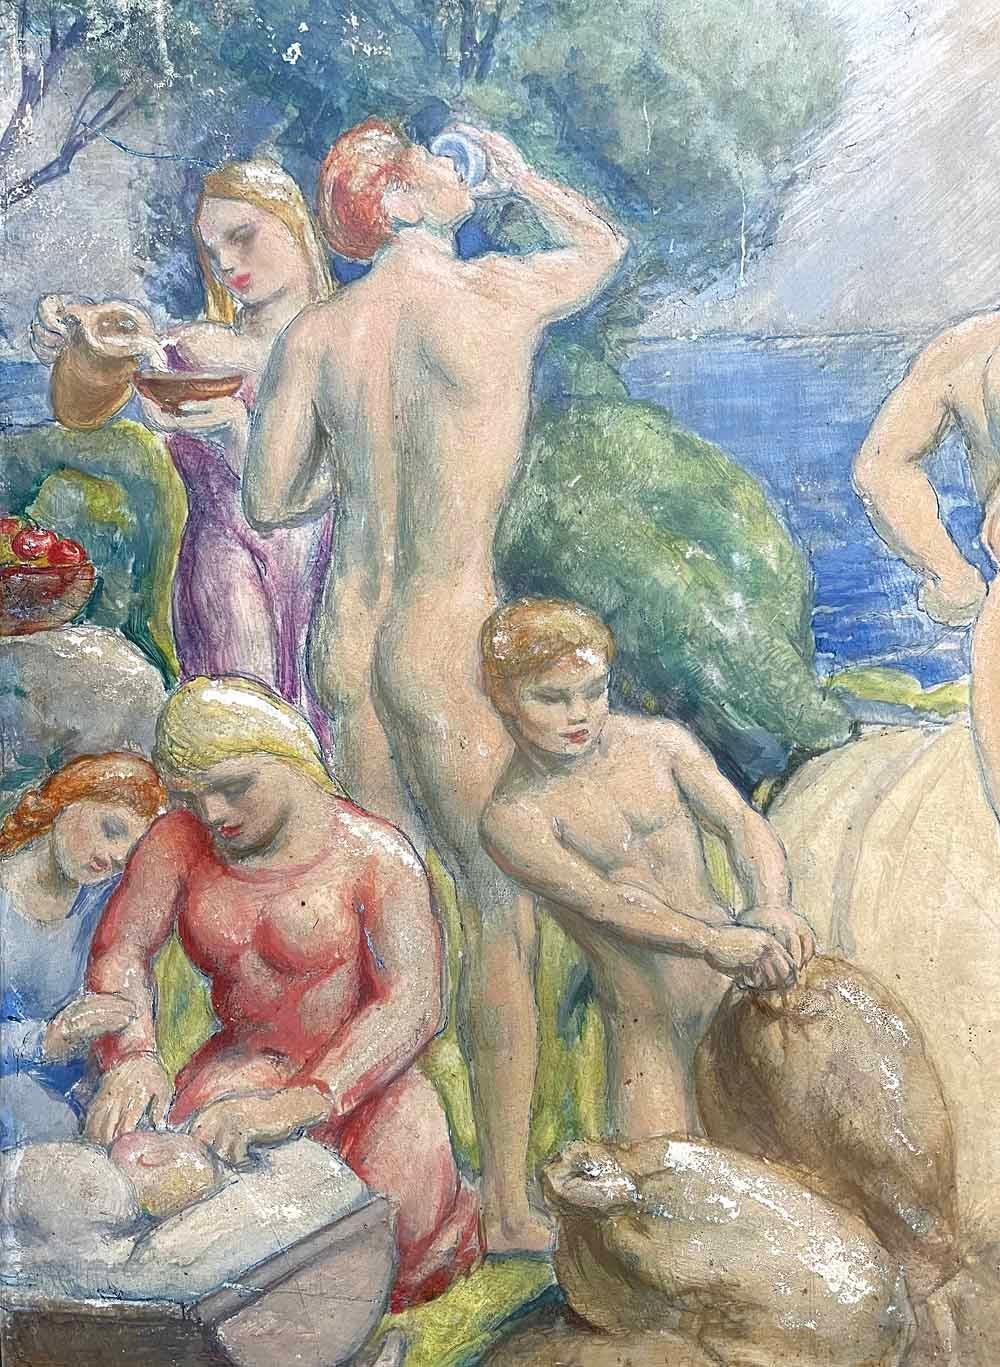 Joseph Mortimer Lichtenauer étant surtout connu pour ses peintures murales publiques, il n'est pas surprenant que cette peinture de chevalet - avec sa frise de personnages nus et habillés de façon classique qui s'étendent sur la scène - ait l'allure